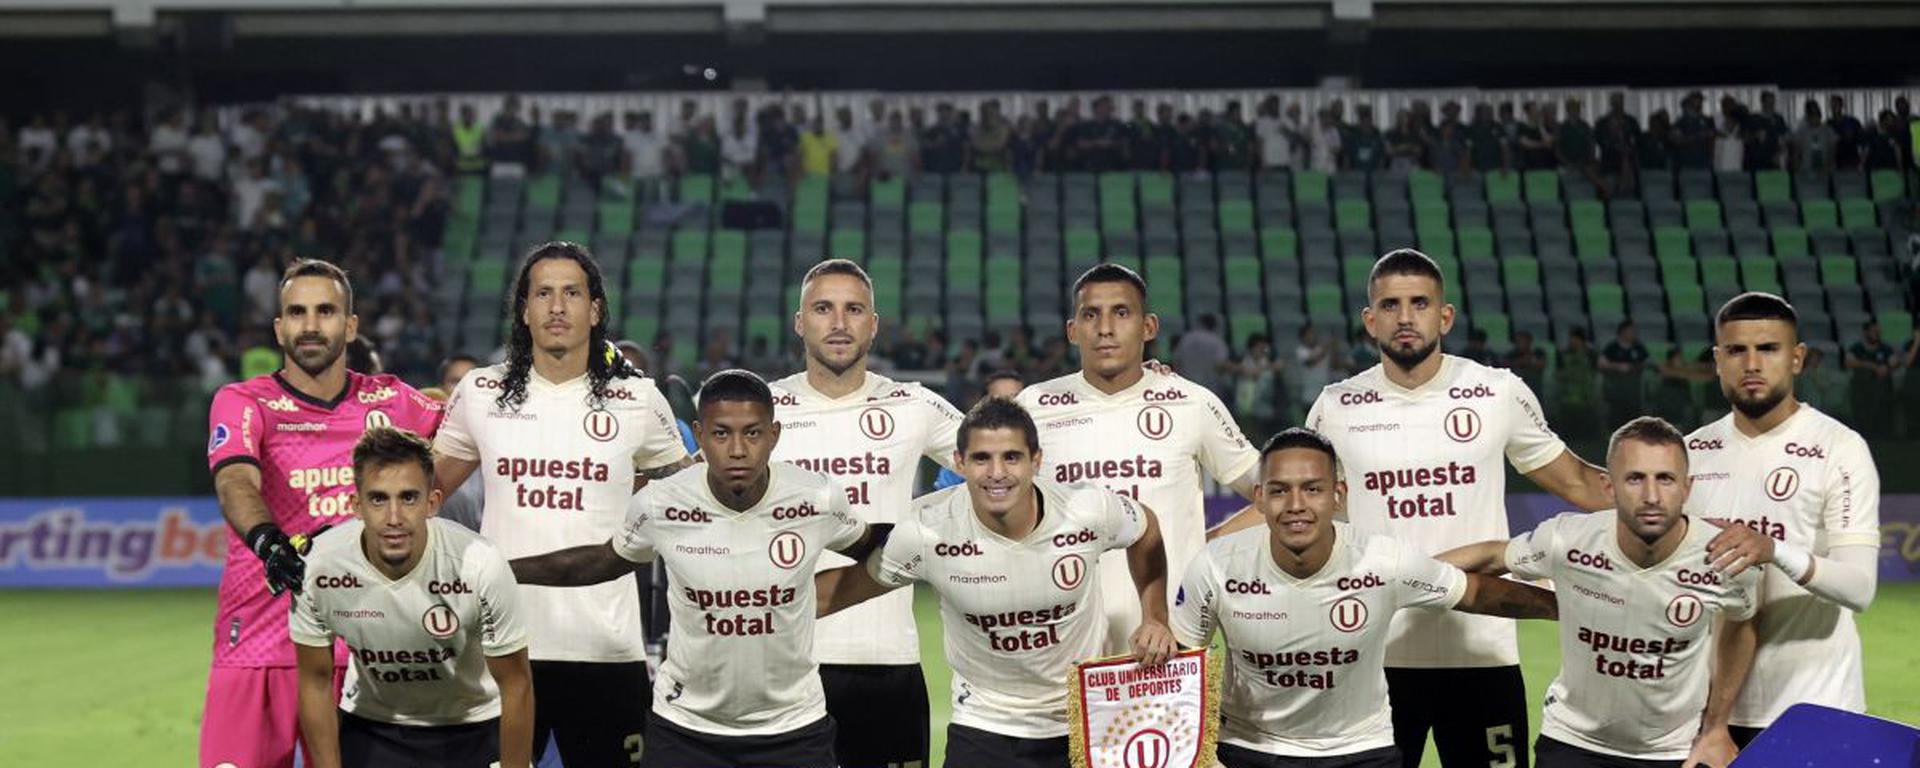 Universitario pierde el invicto en la Sudamericana, pero mantiene la ilusión: así vimos el unoxuno crema ante Goiás 